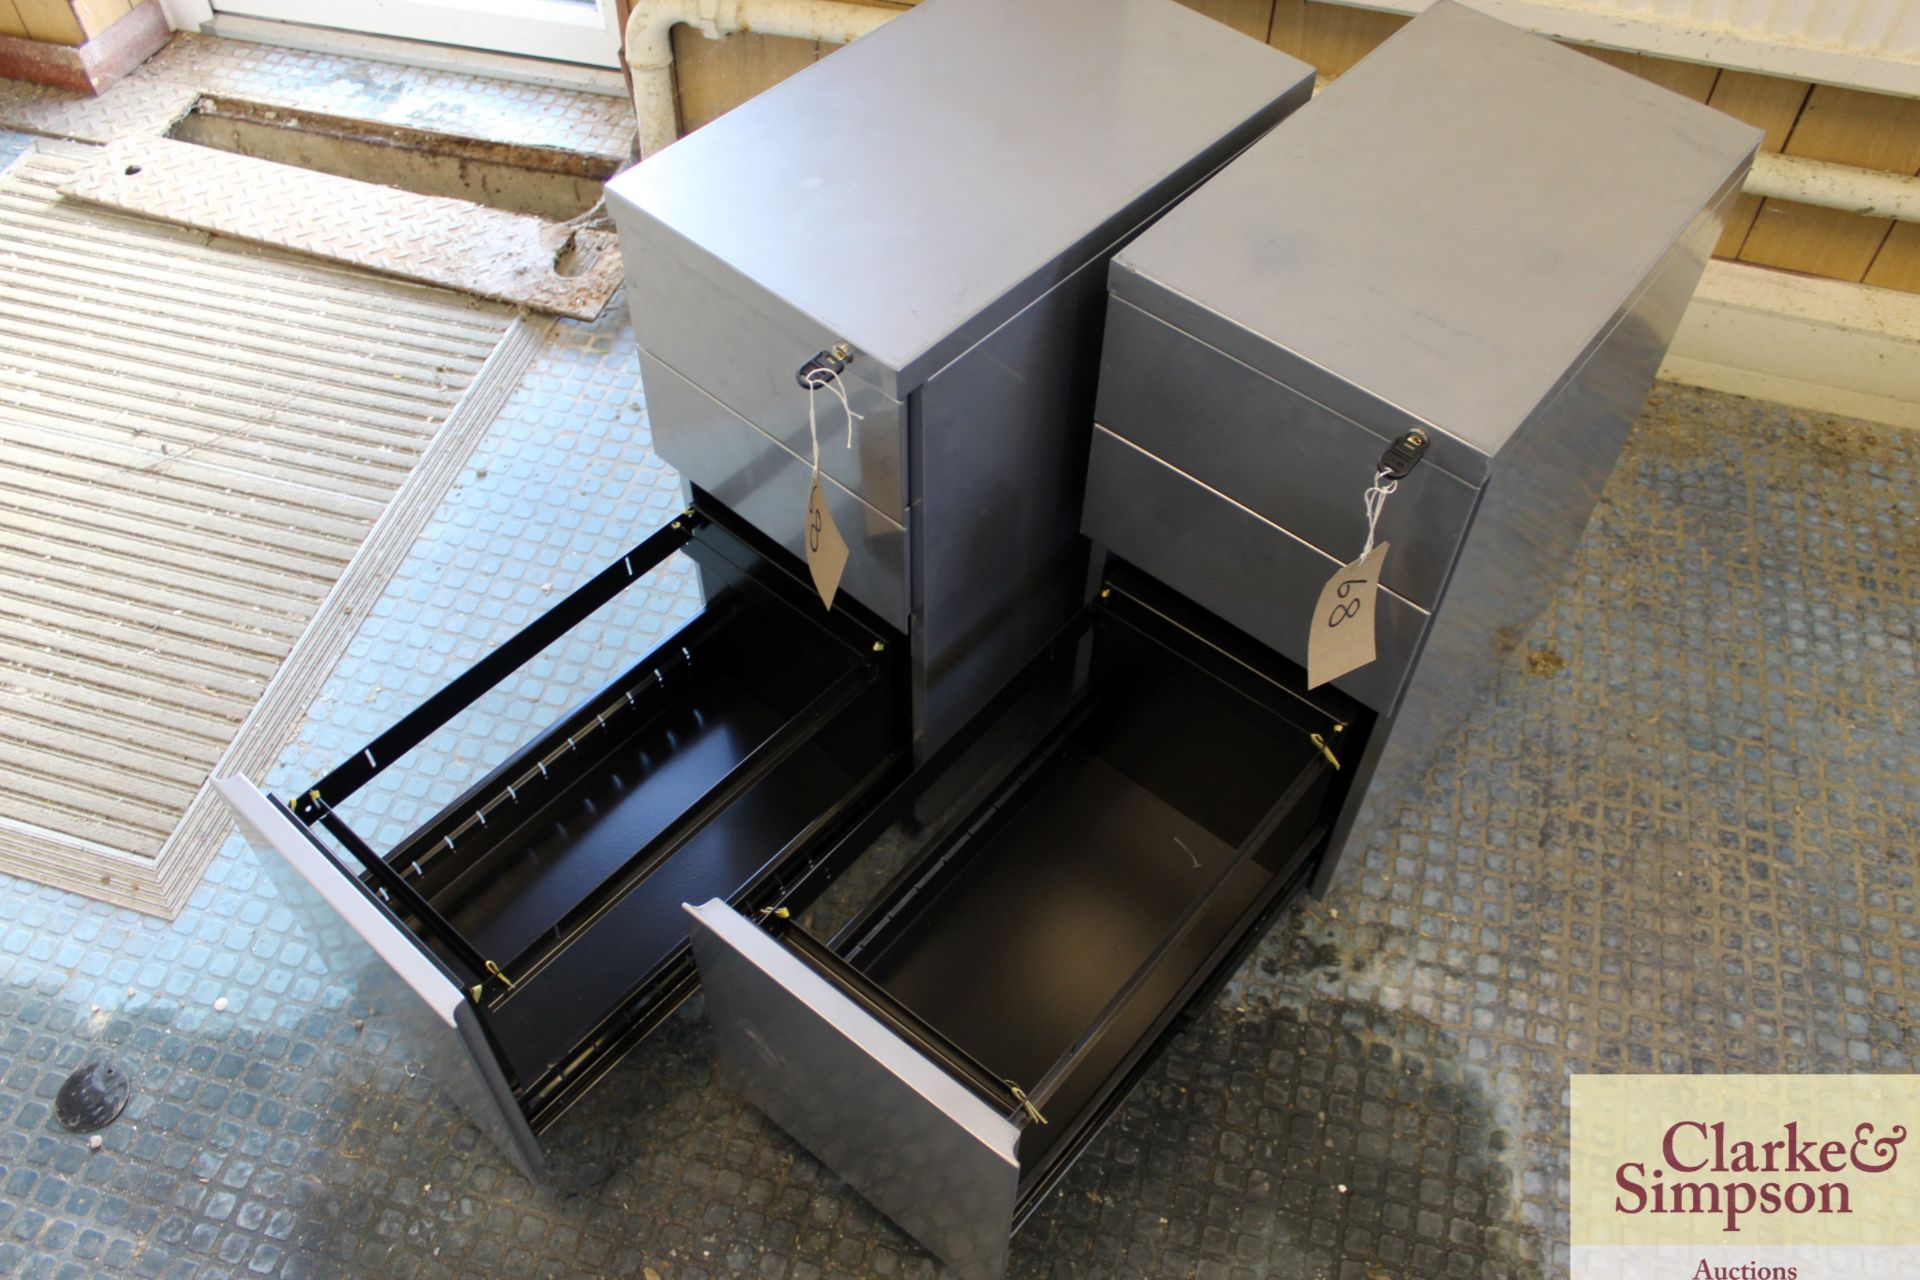 2x grey metal 3 drawer desk pedestals. With keys. - Image 2 of 4